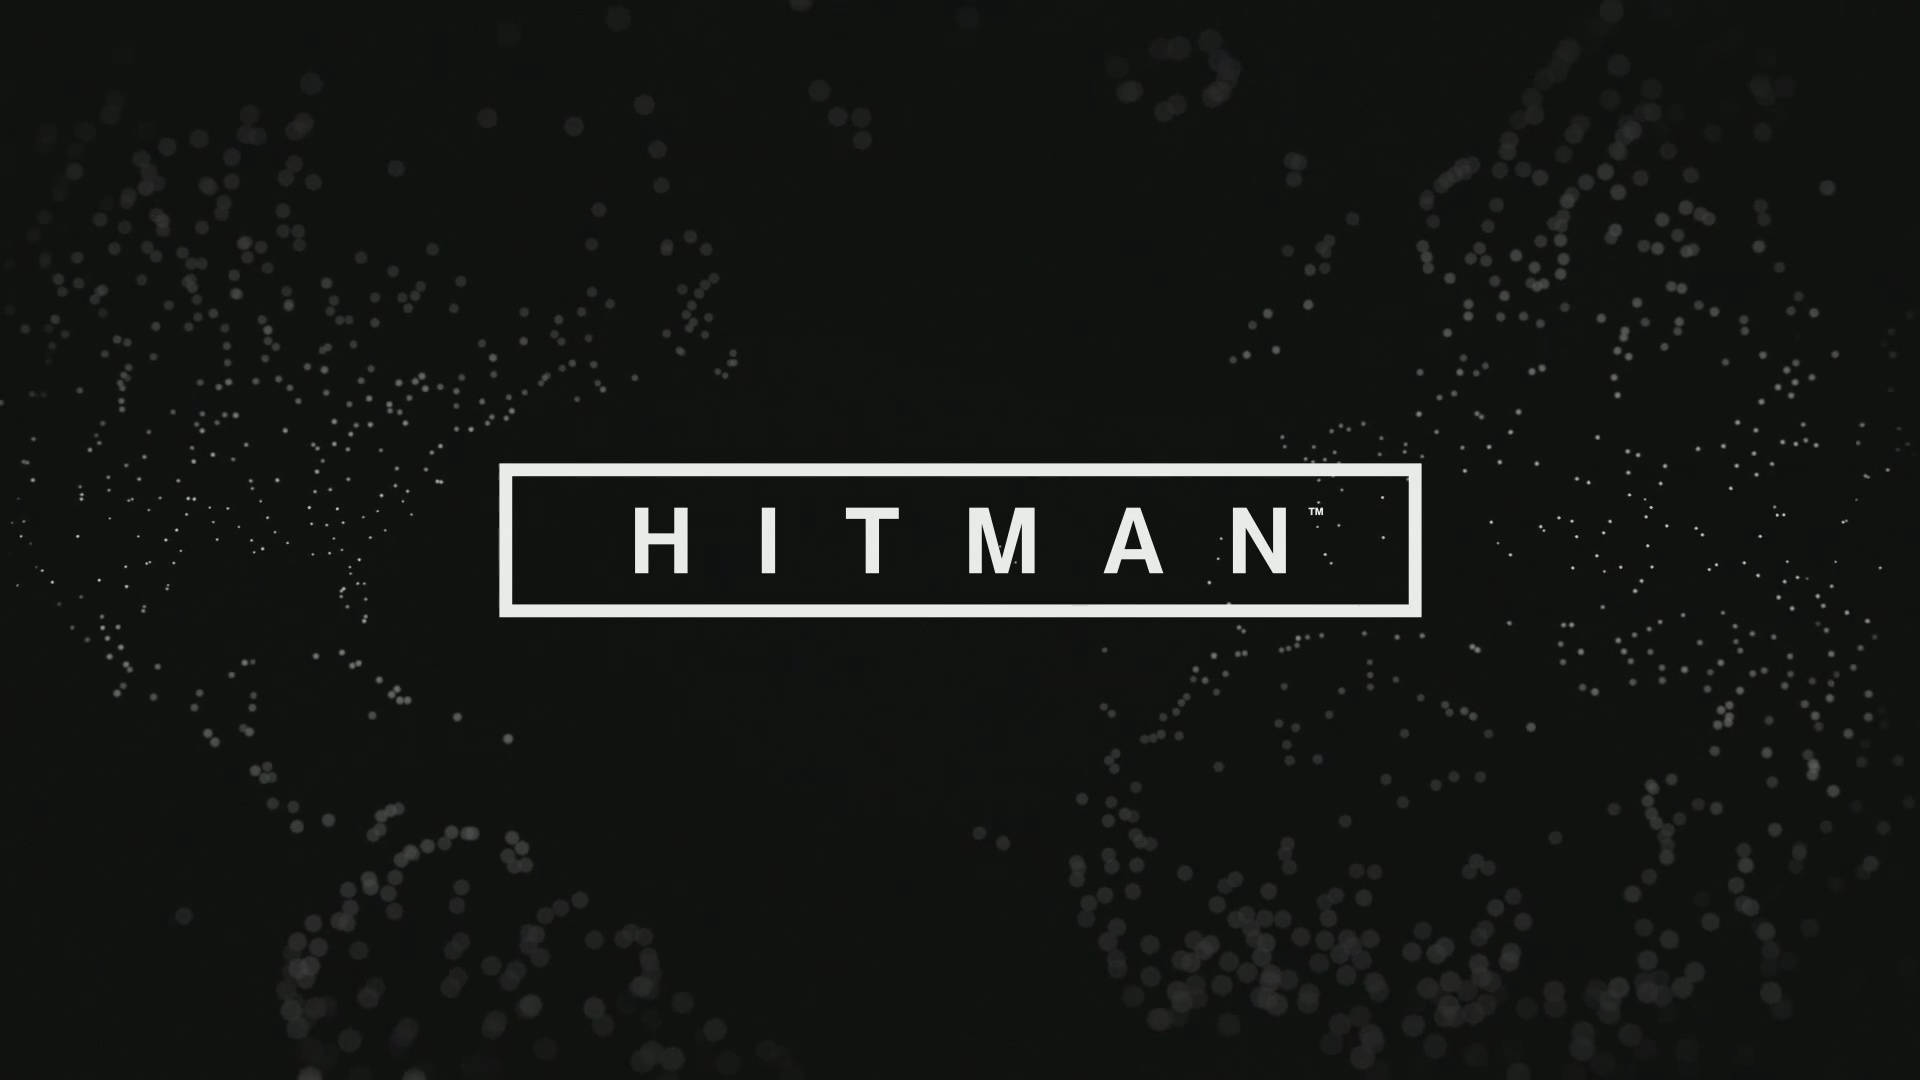 Hitman Hd Title Text Wallpaper